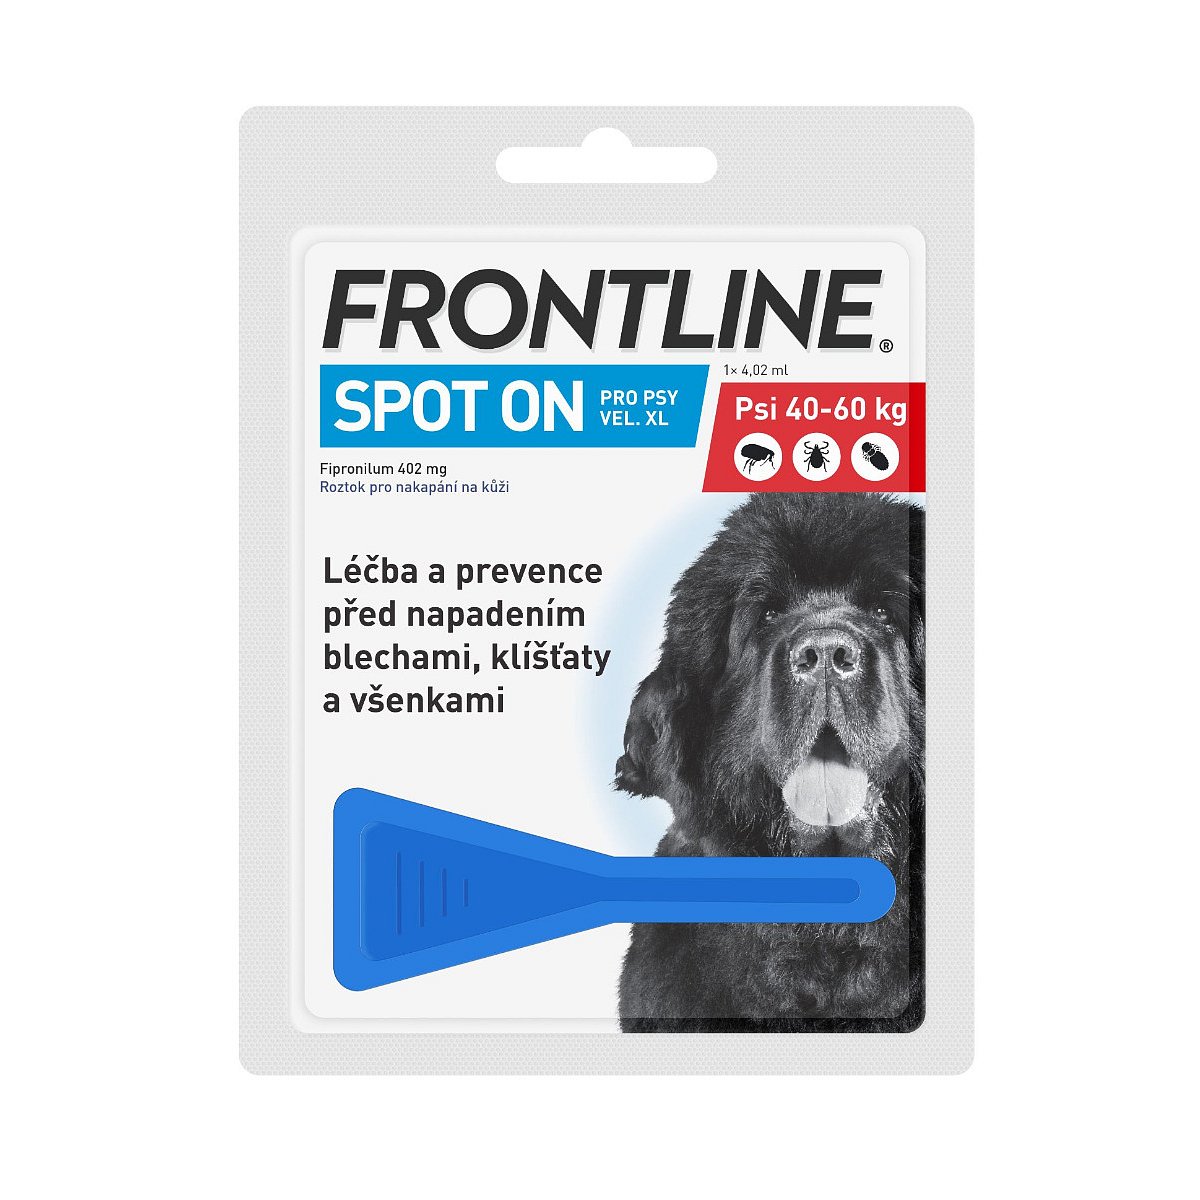 Frontline Spot On pro psy XL 40-60 kg pipeta 1x4,02 ml